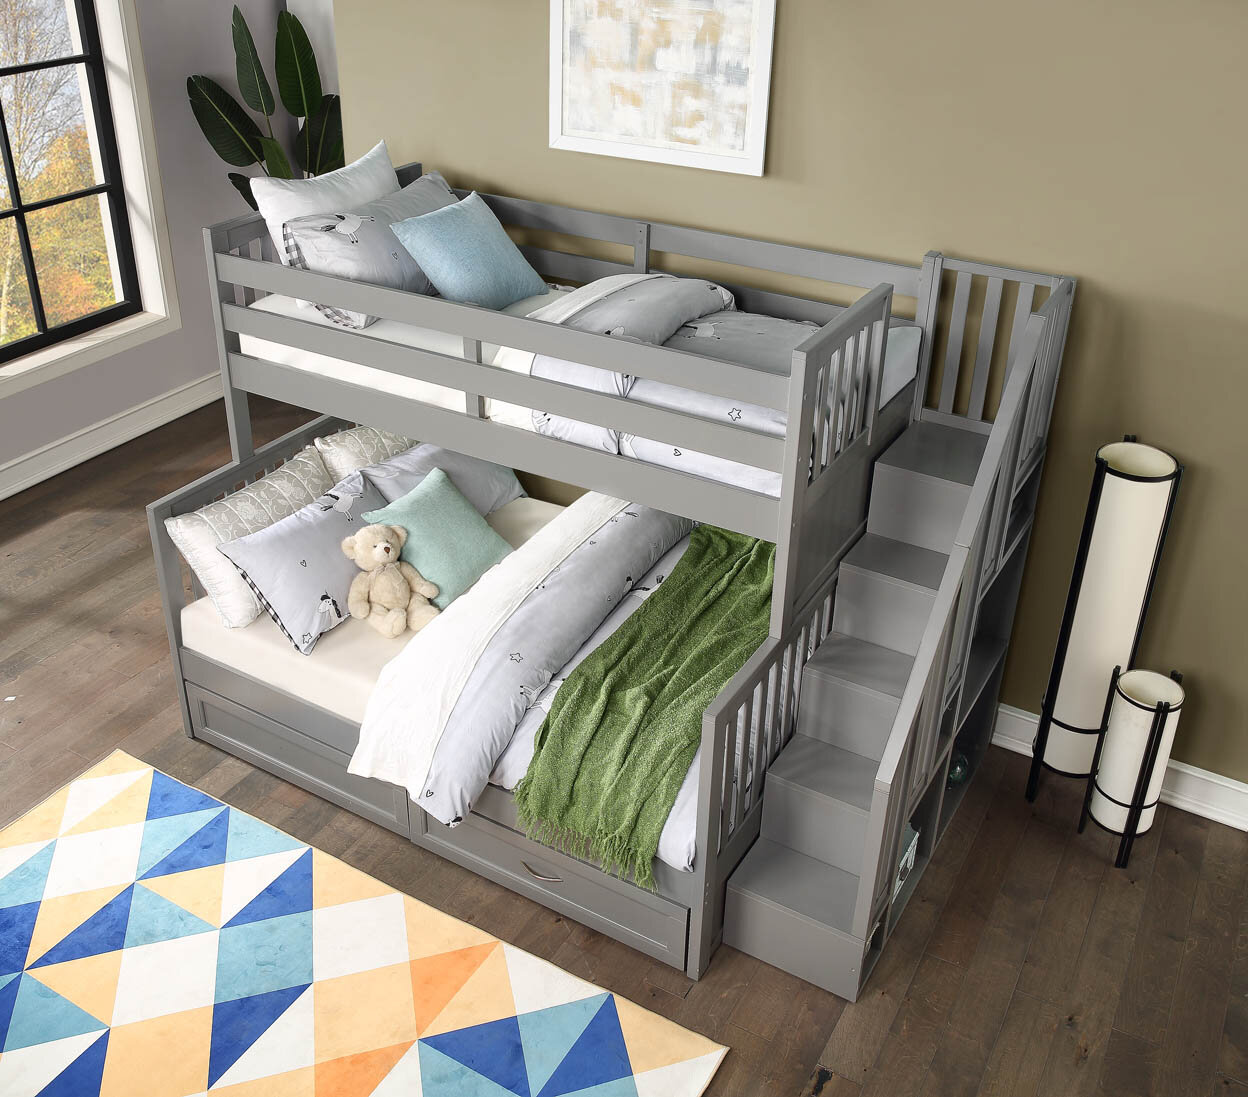 Caramia Furniture Bunk Beds, Caramia Bunk Bed